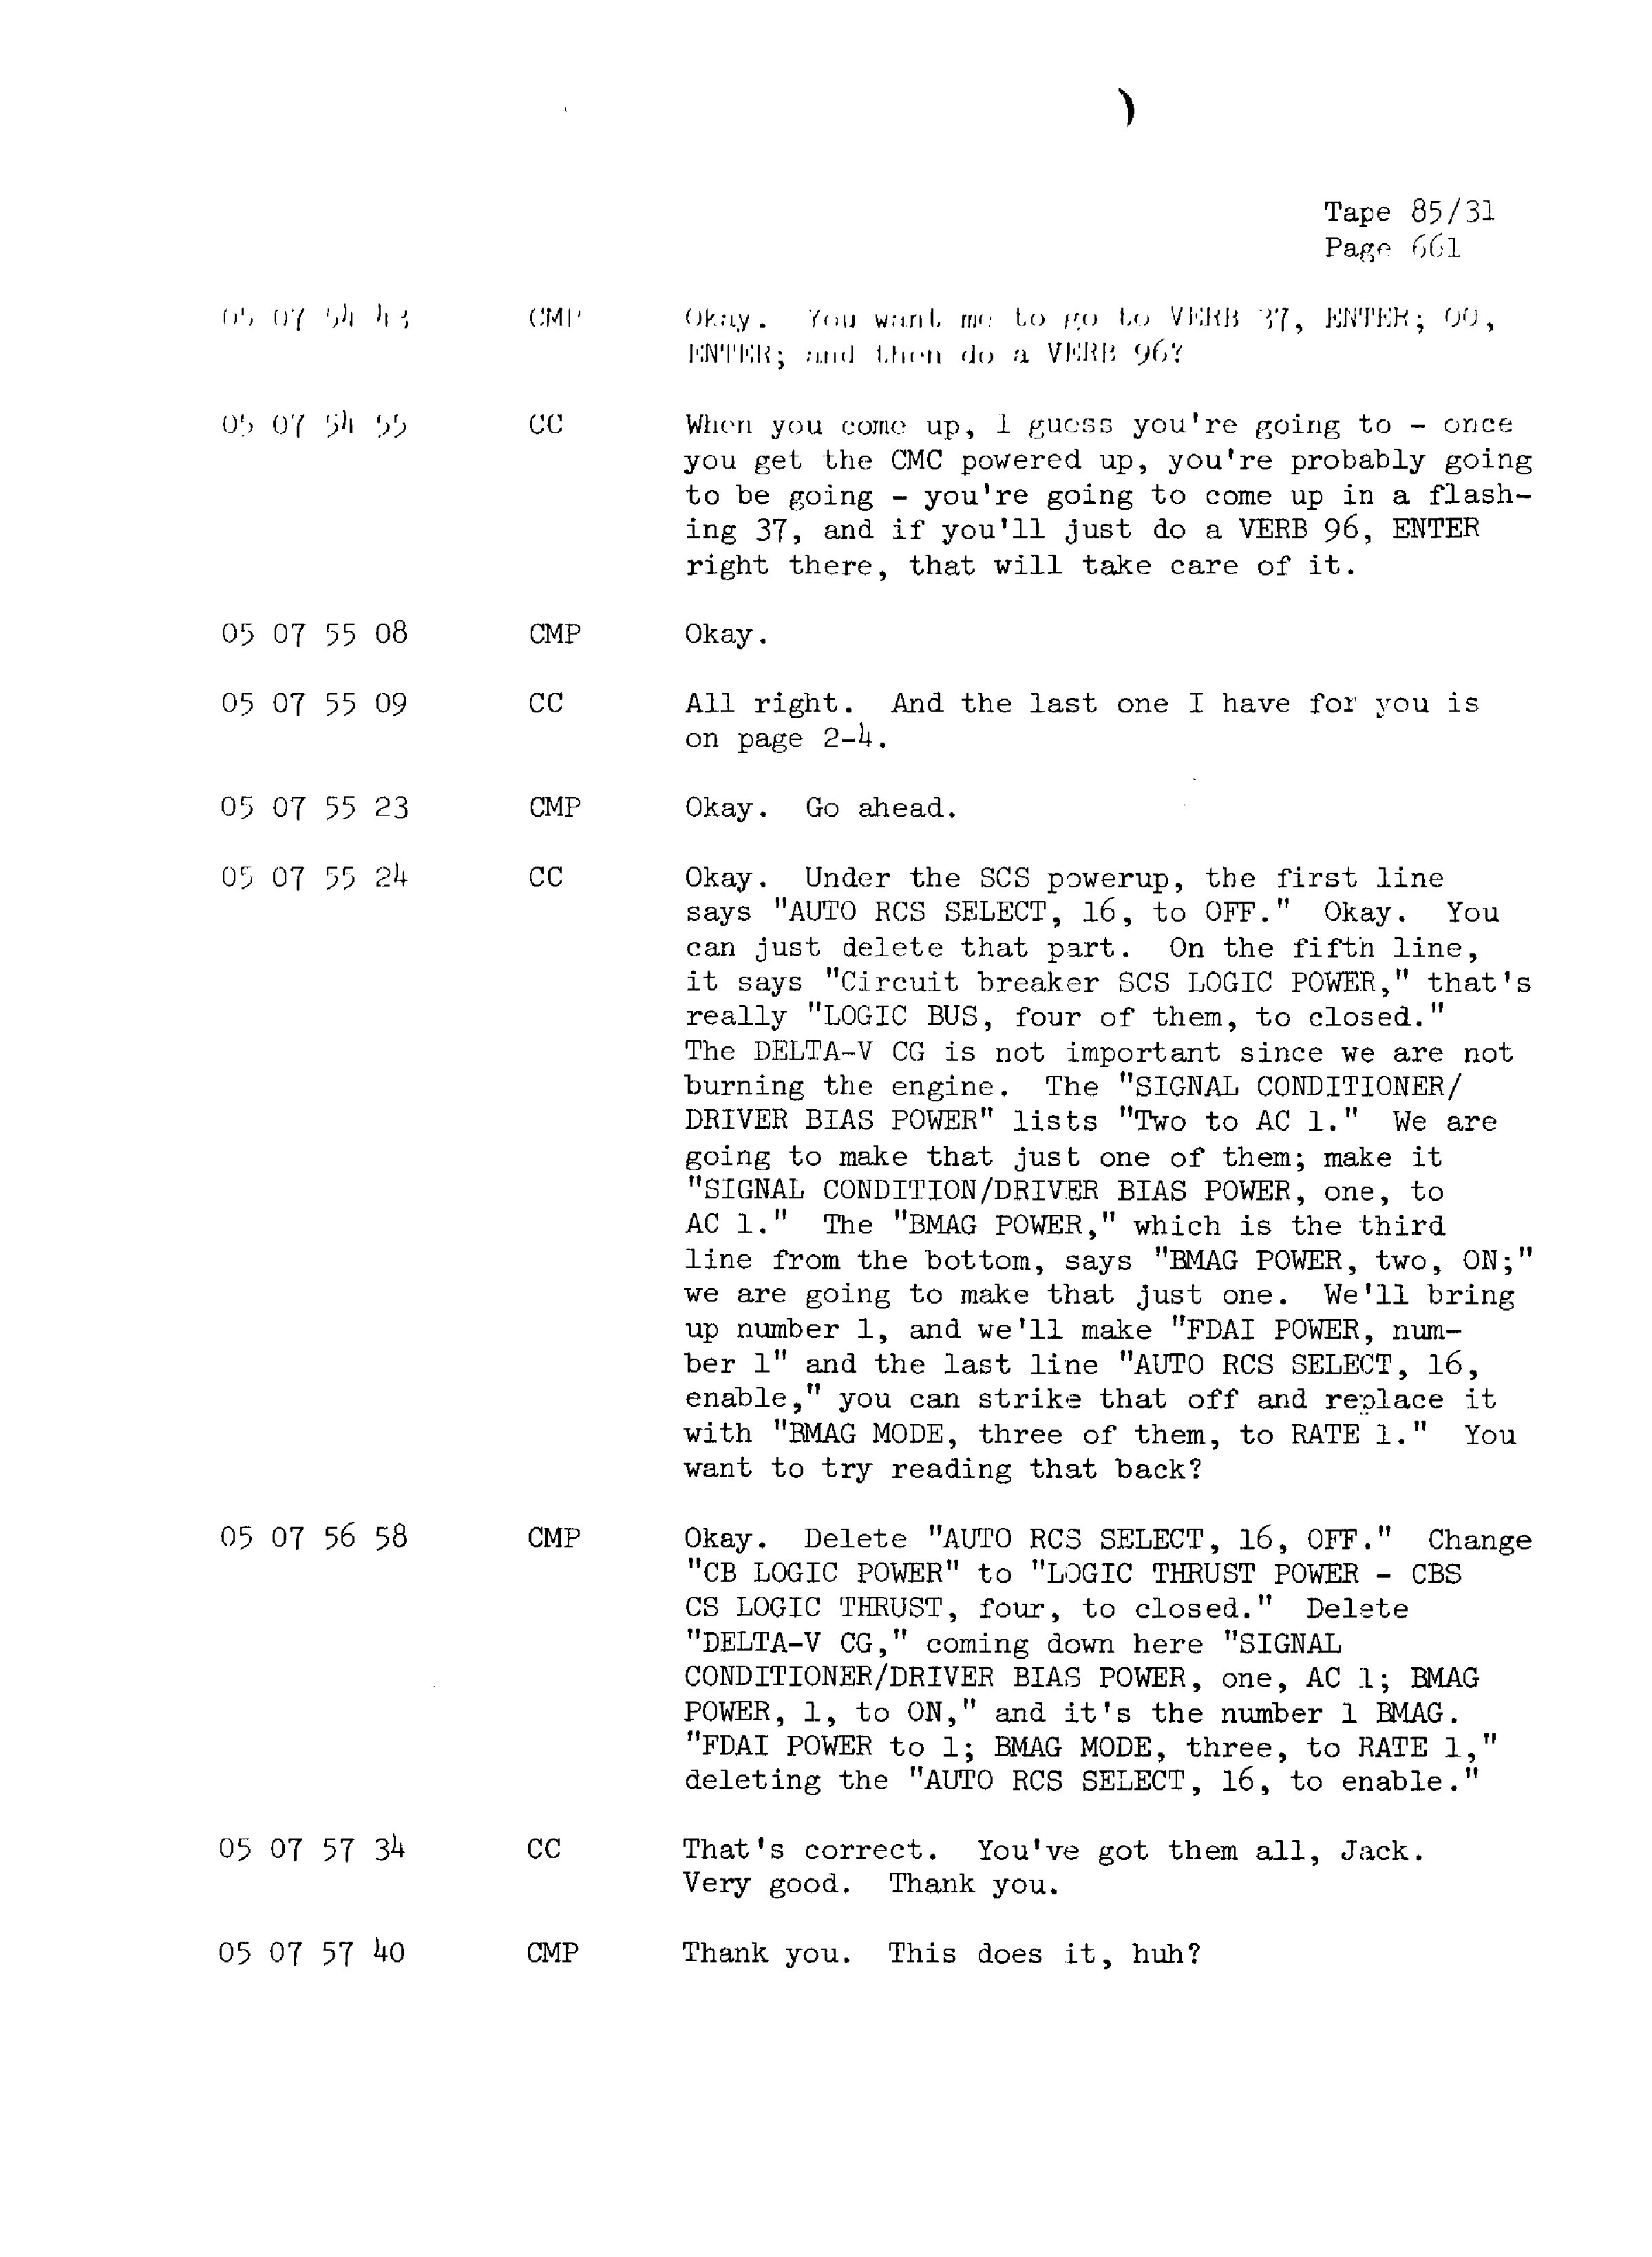 Page 668 of Apollo 13’s original transcript